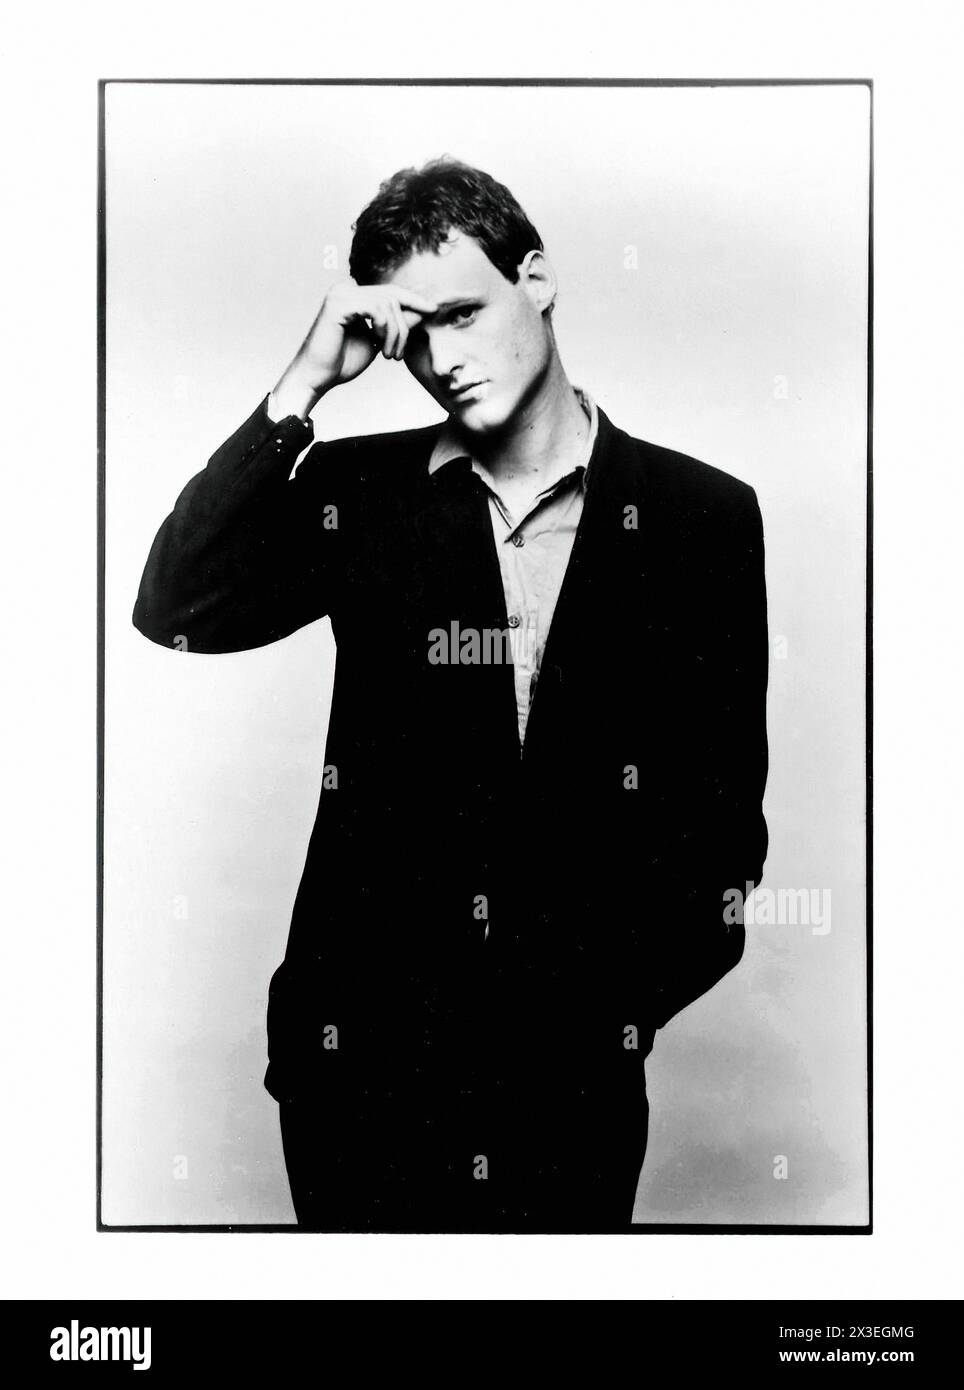 Keith Strickland - immagine promozionale etichetta musicale d'epoca - fotografo sconosciuto, solo per uso editoriale Foto Stock